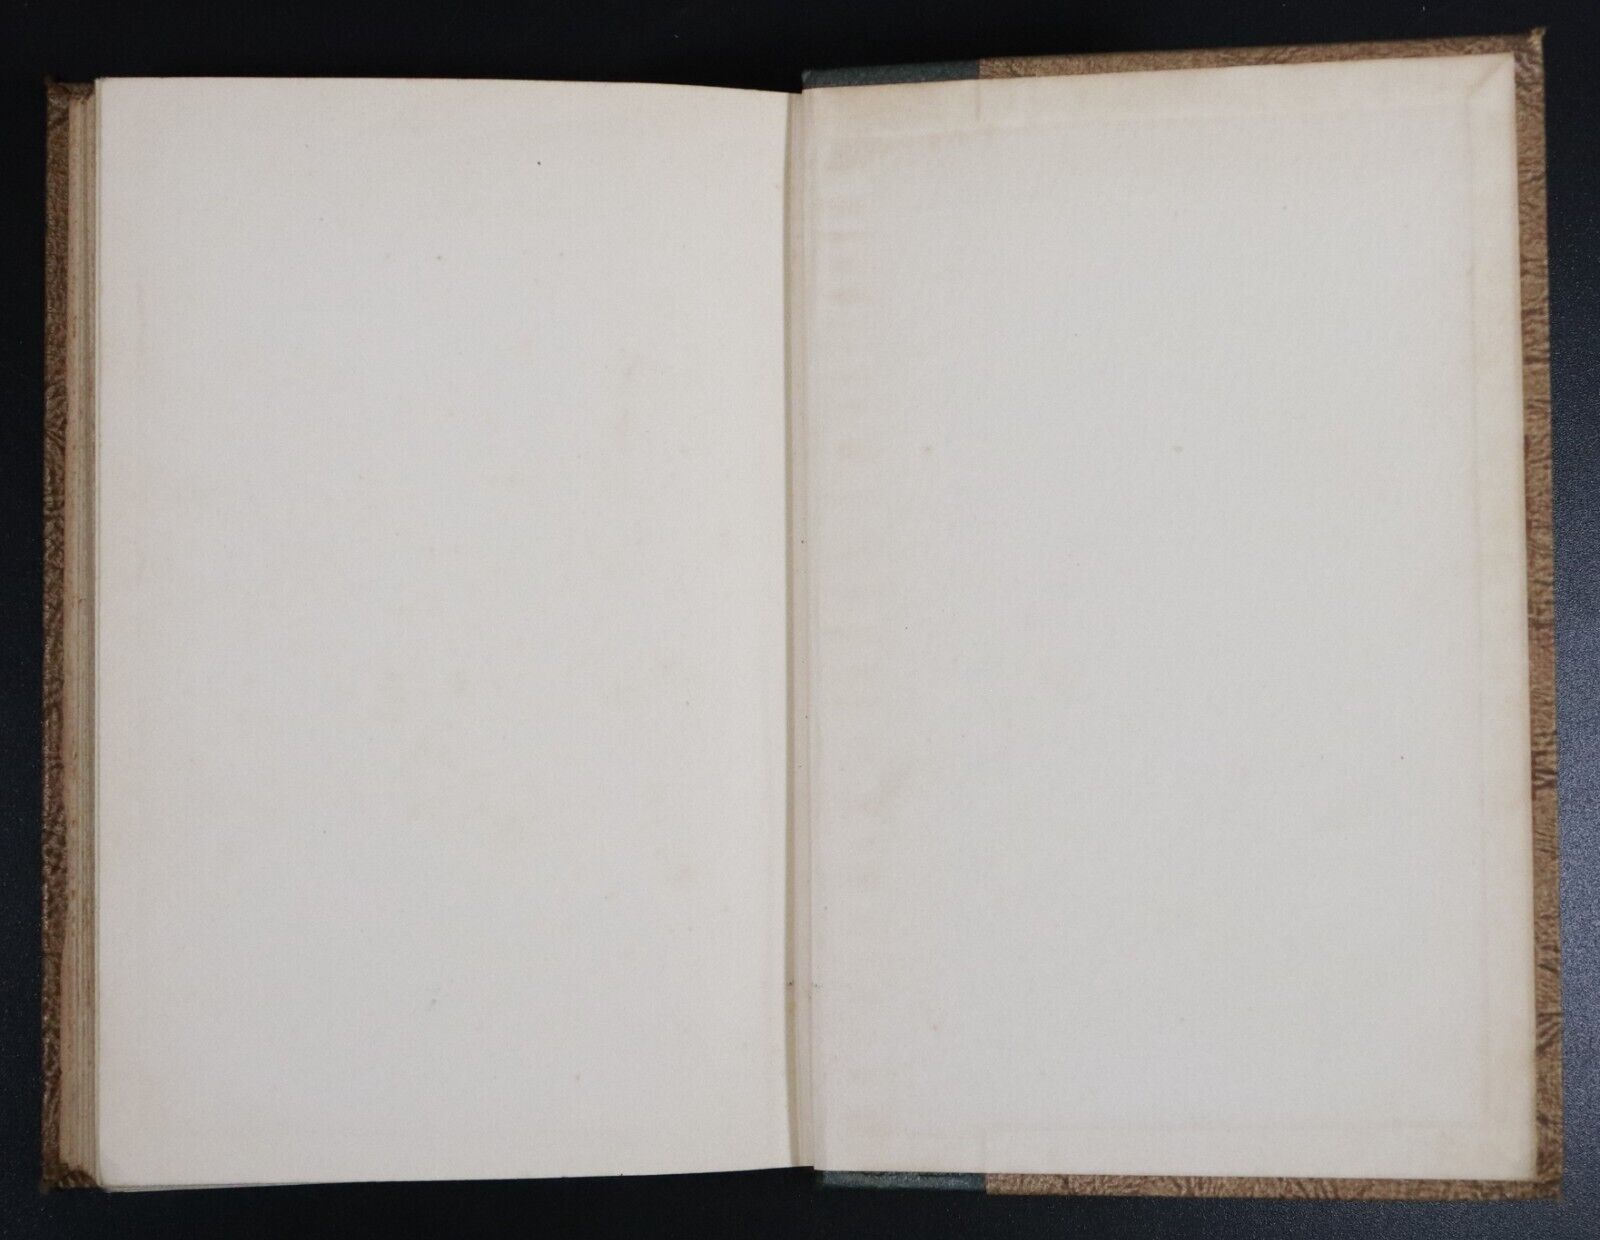 c1950 Peret Goriot by Honore De Balzac - Art Type Edition - Vintage Fiction Book